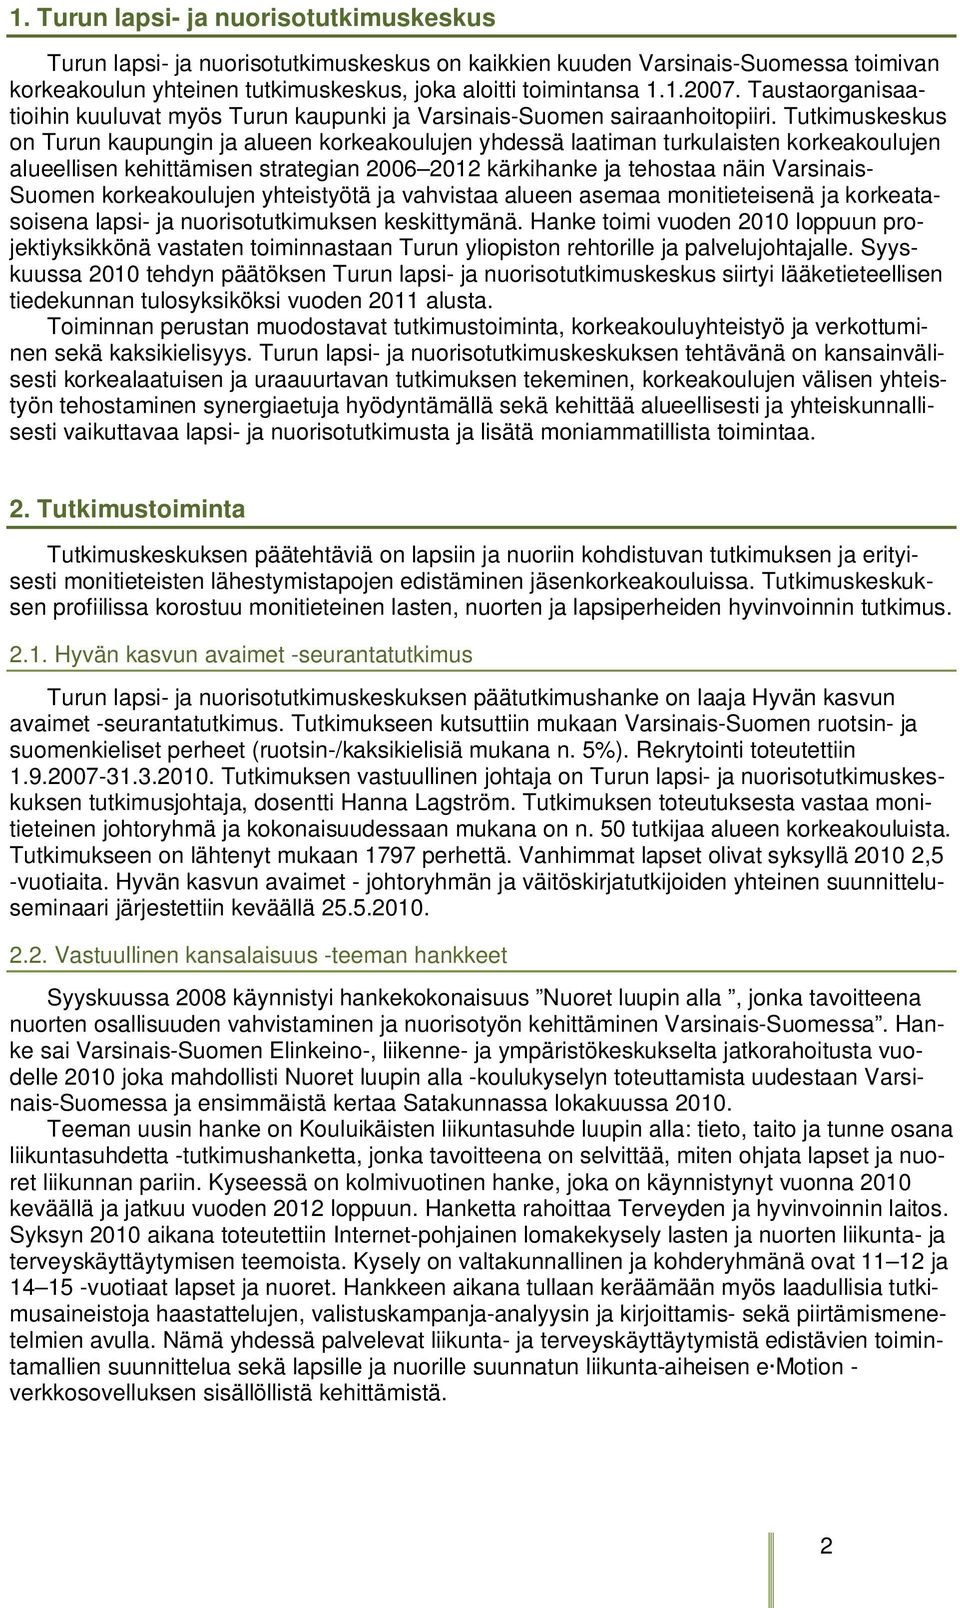 Tutkimuskeskus on Turun kaupungin ja alueen korkeakoulujen yhdessä laatiman turkulaisten korkeakoulujen alueellisen kehittämisen strategian 2006 2012 kärkihanke ja tehostaa näin Varsinais- Suomen